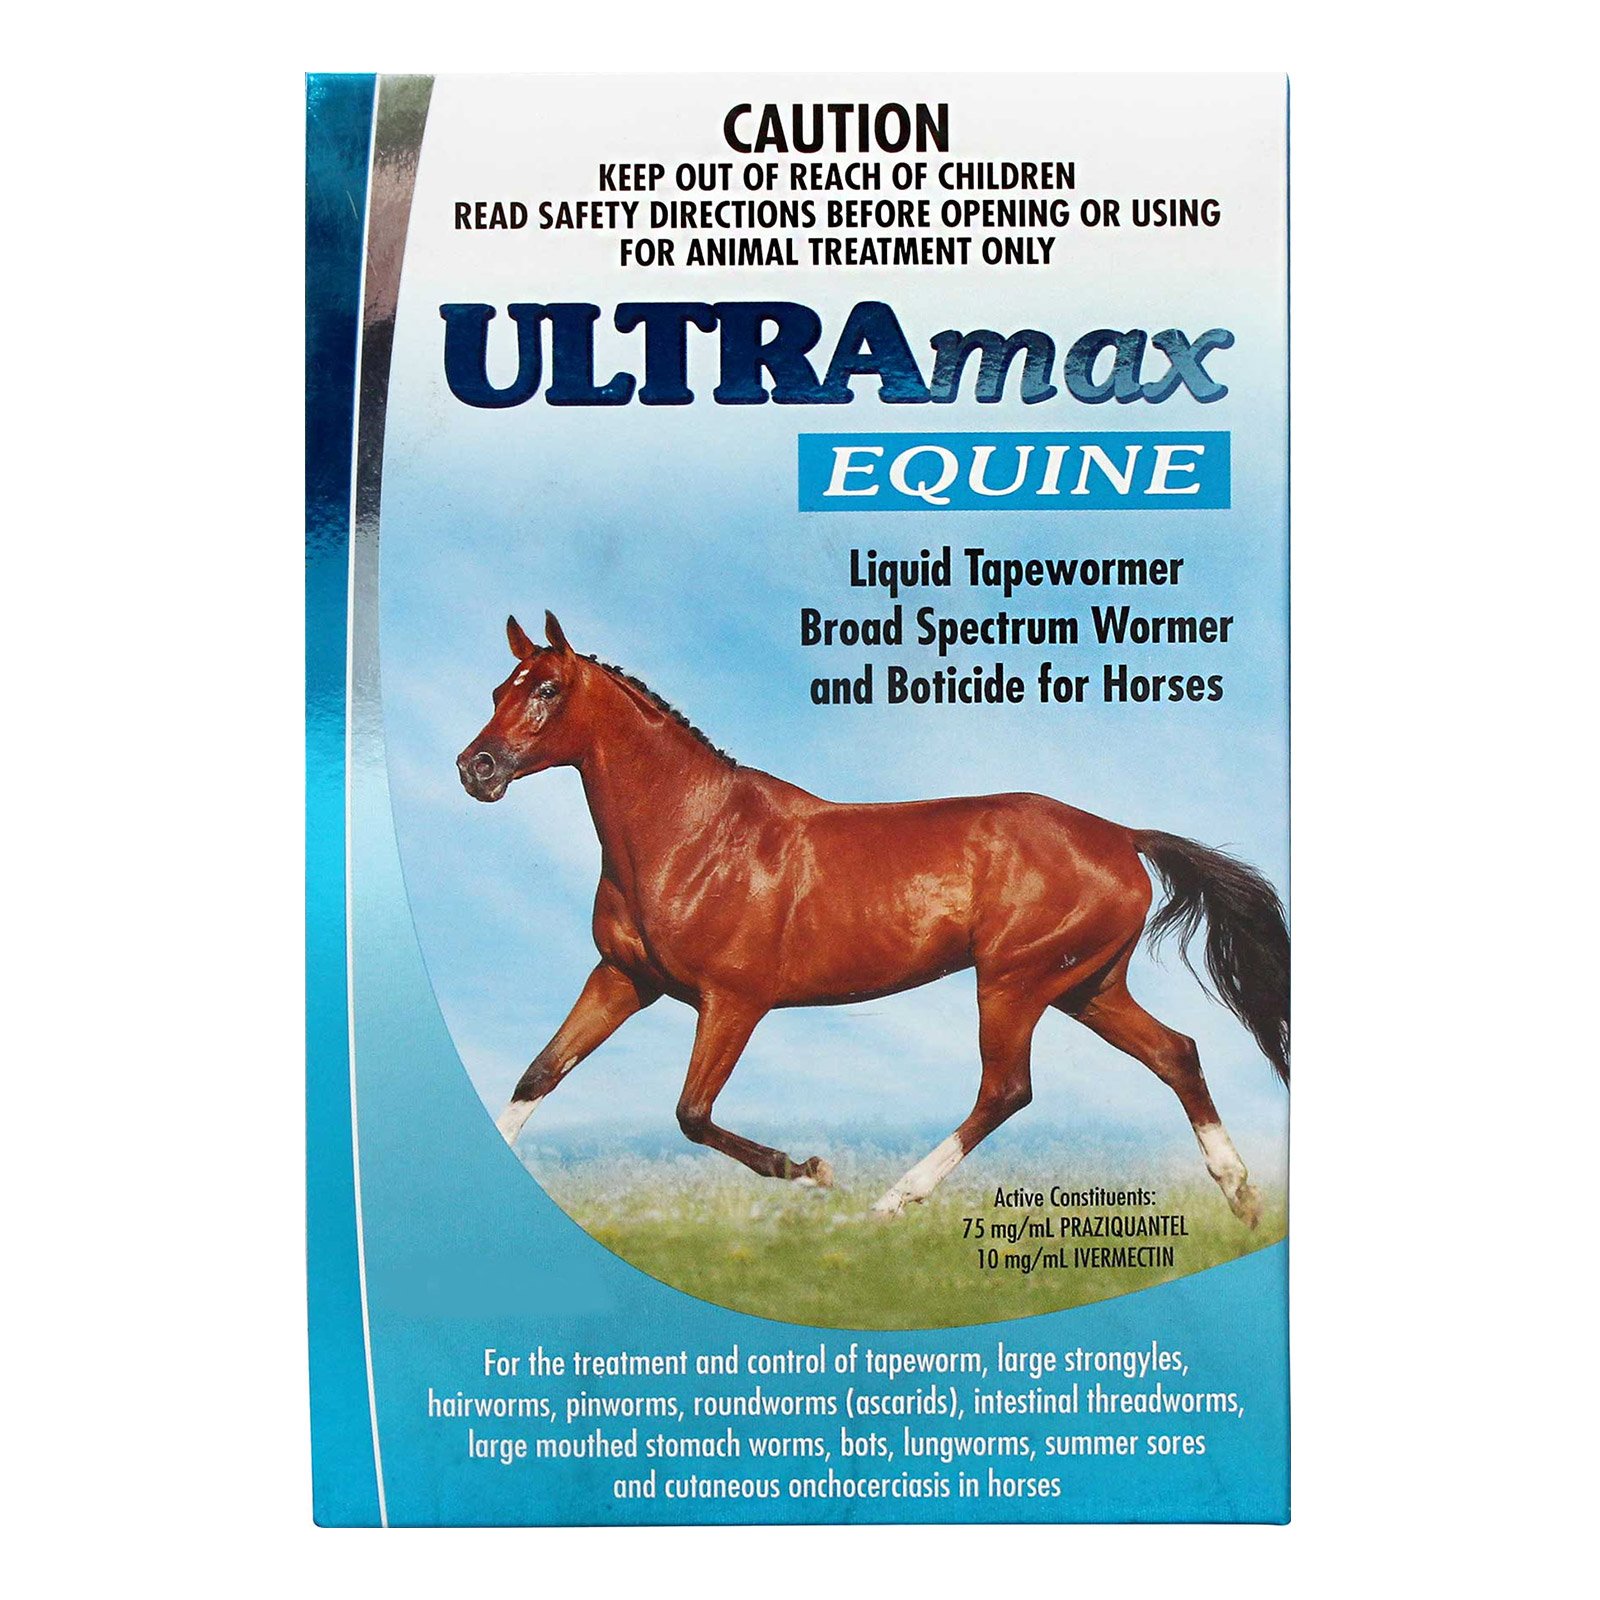 Ultramax Equine